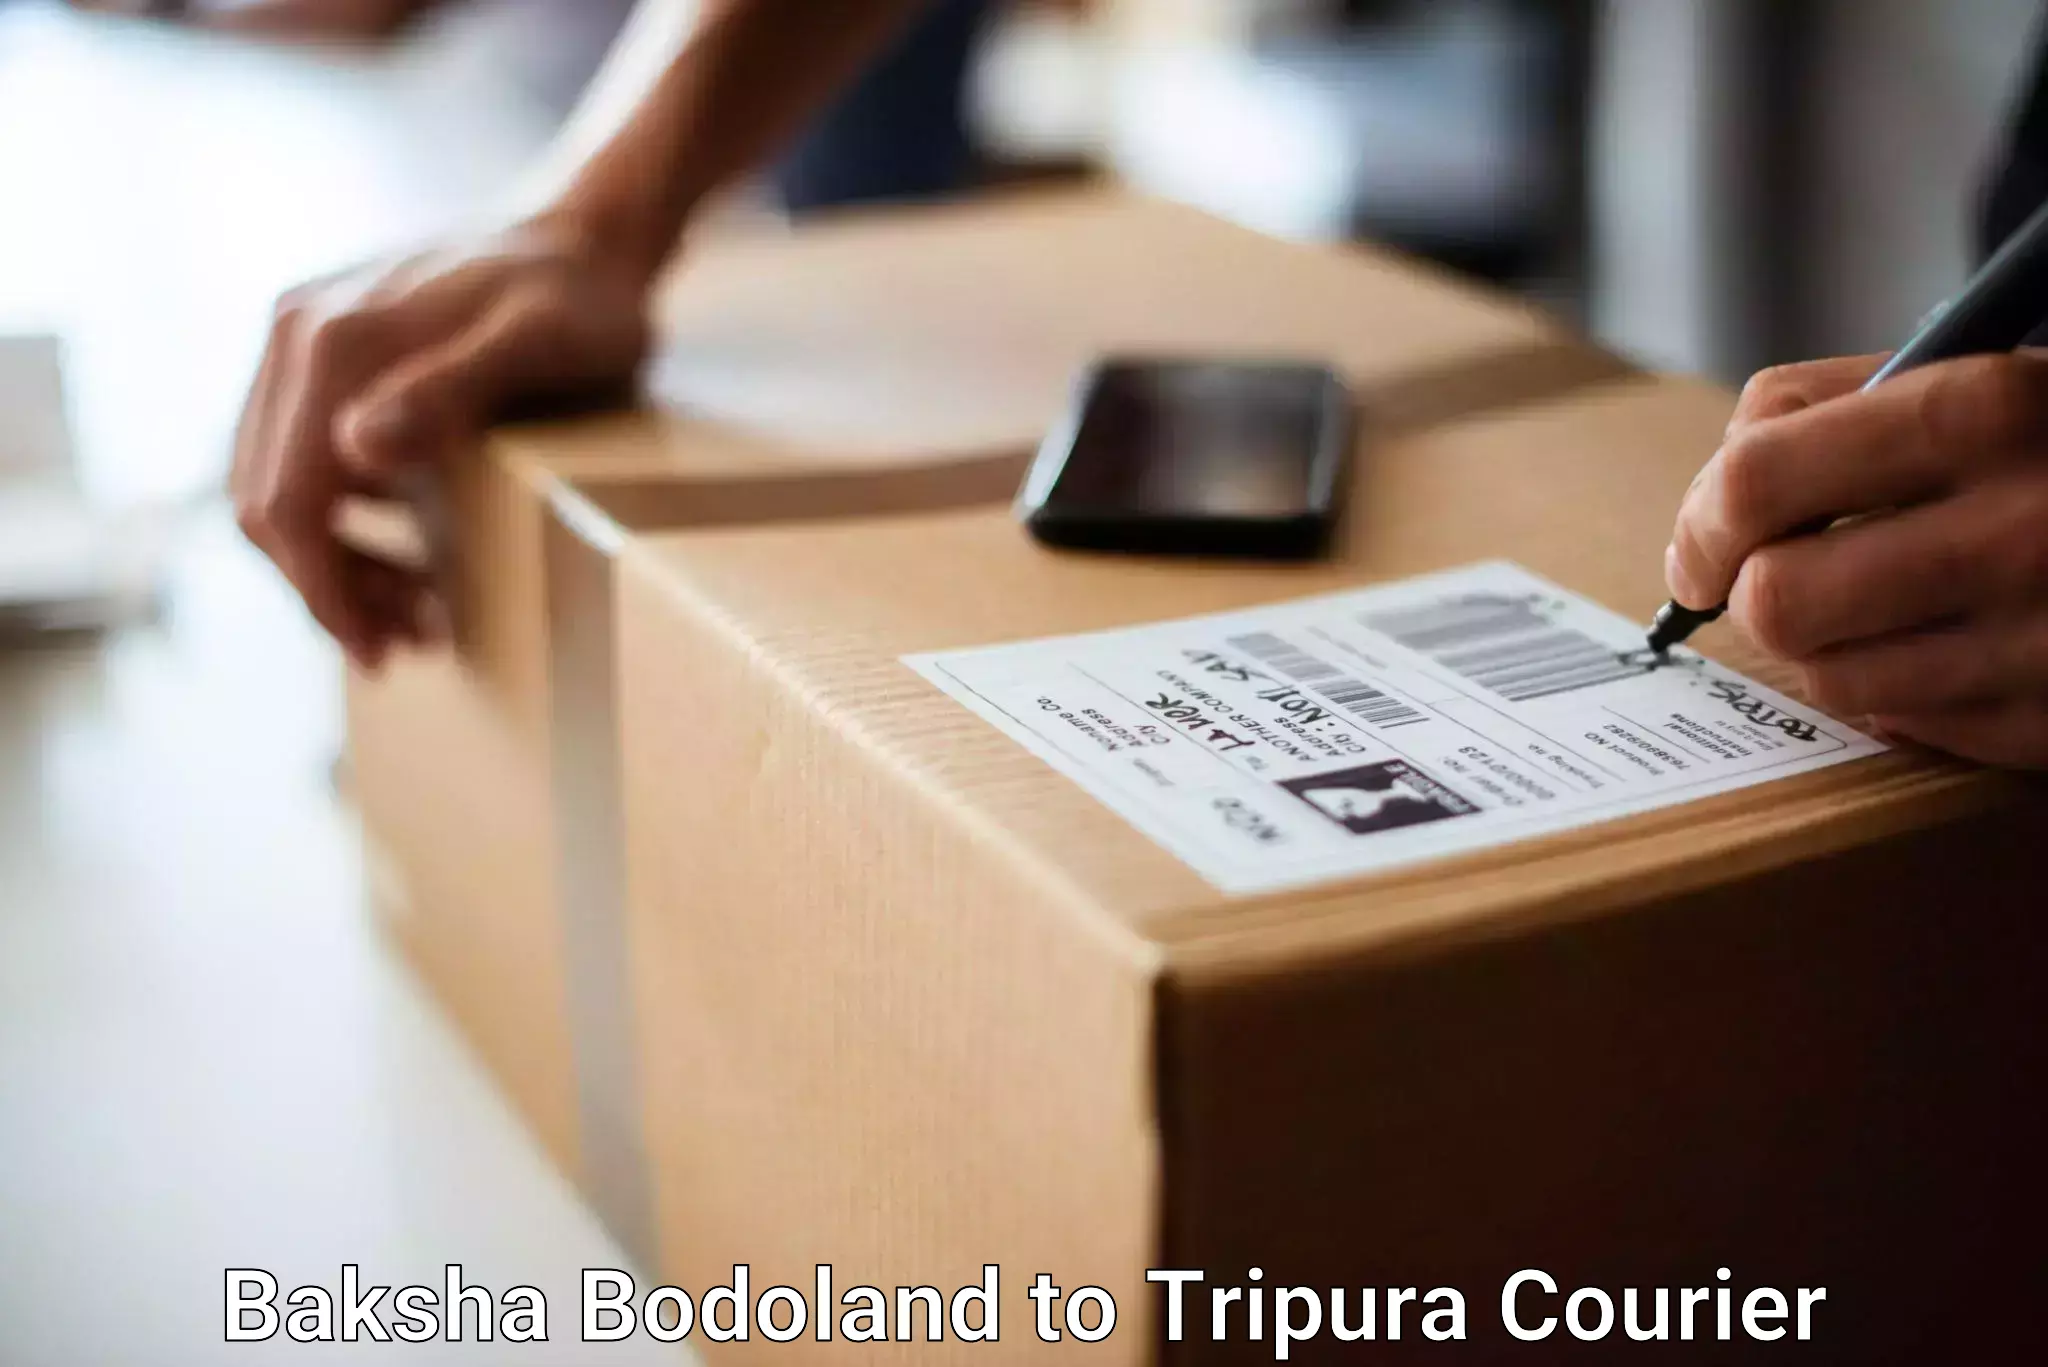 Luggage shipping service Baksha Bodoland to Udaipur Tripura